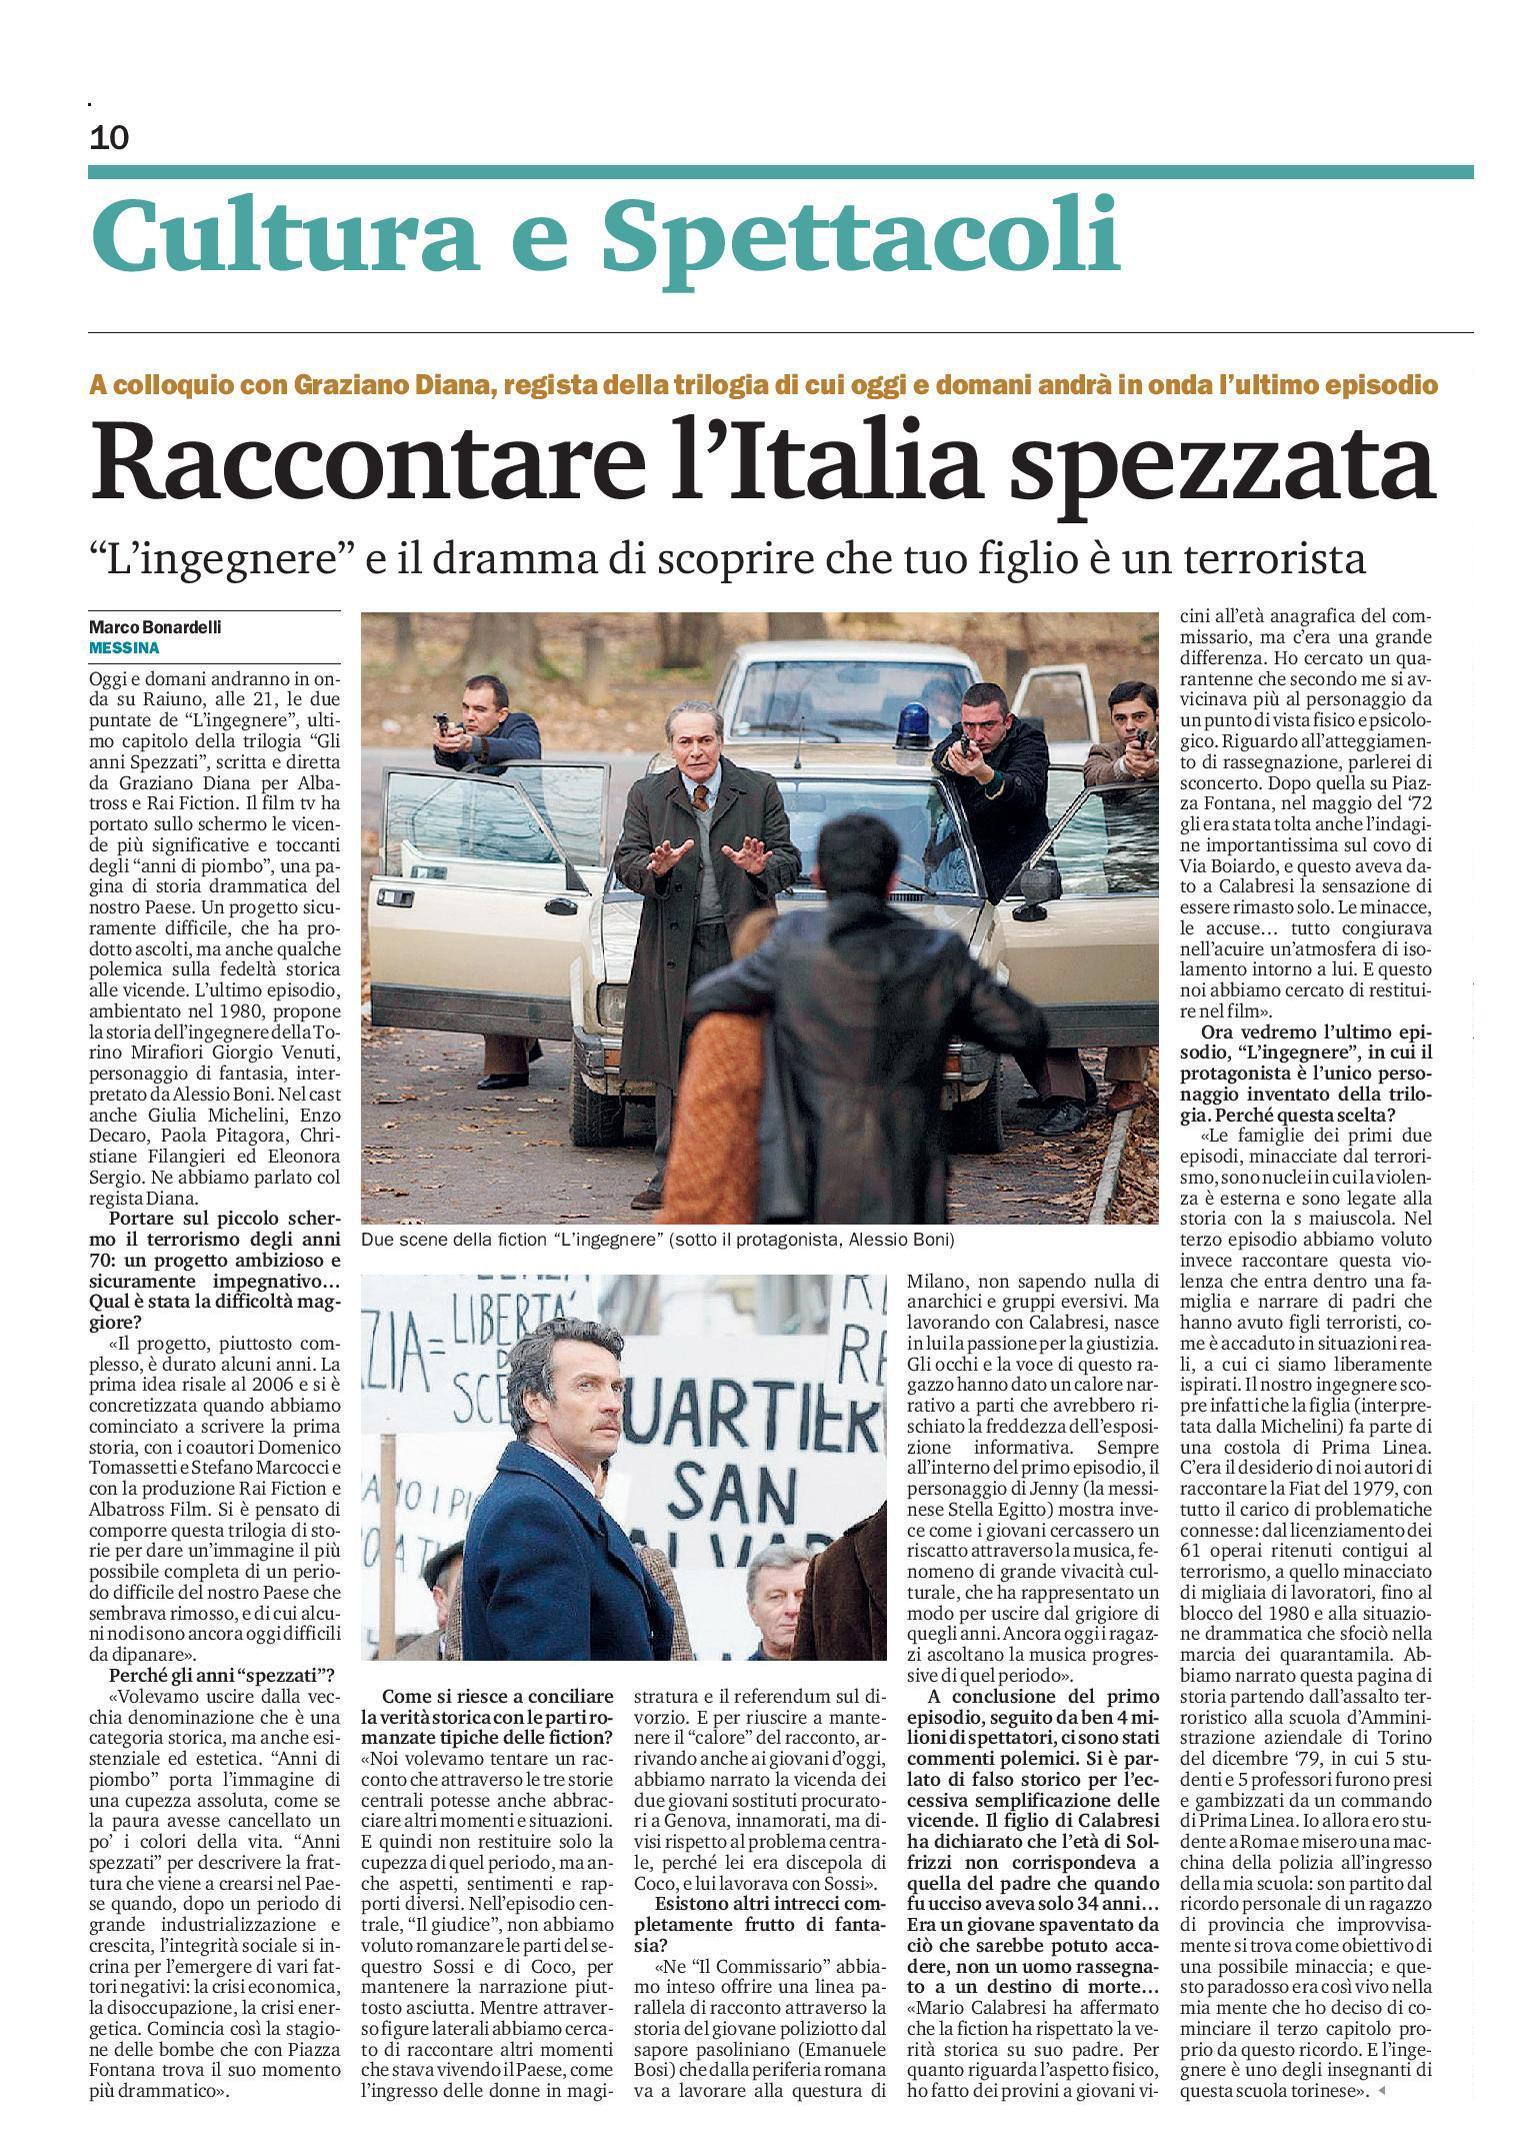 45 - Graziano Diana - Raccontare l Italia spezzata - 27 gennaio 2014.jpg